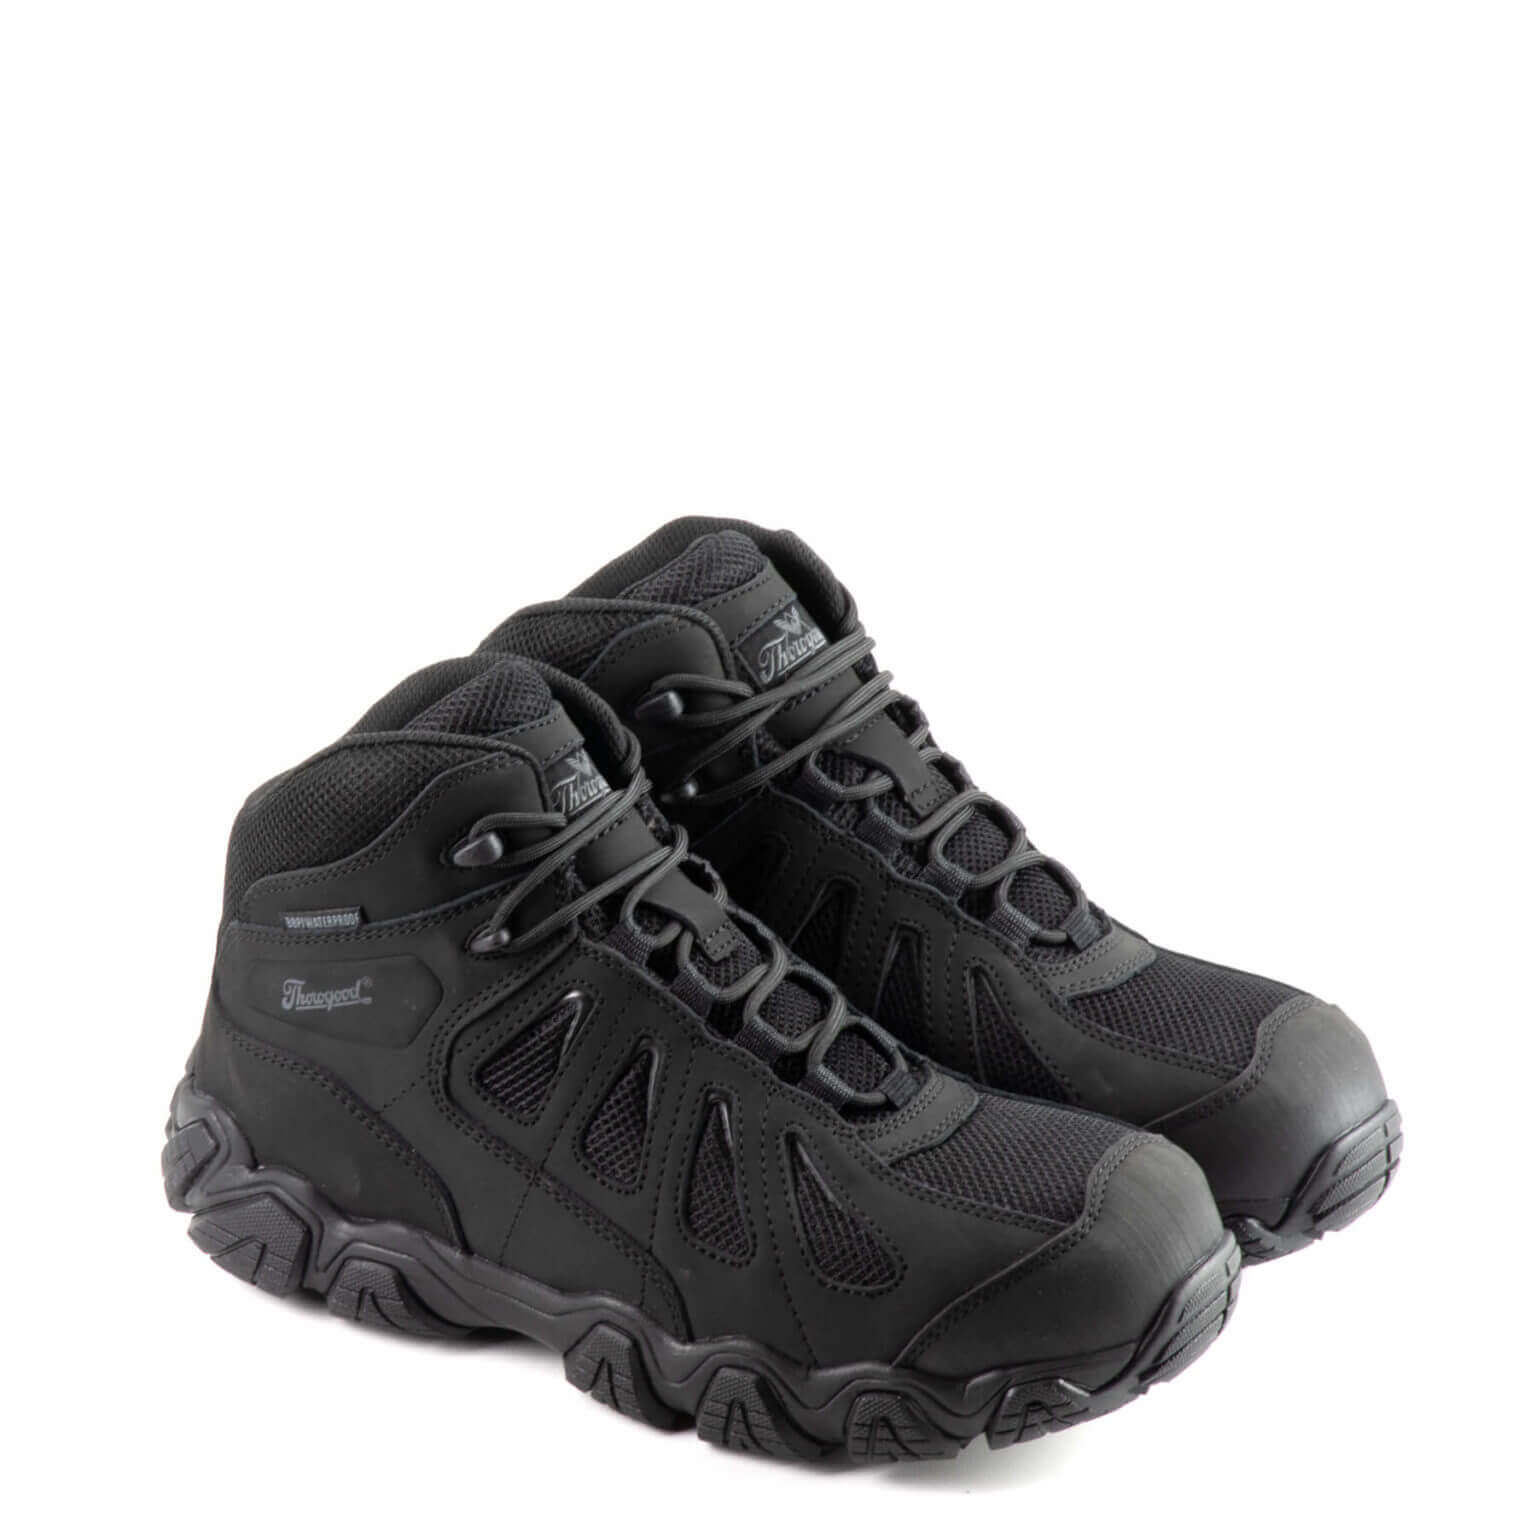 Pair shot of Crosstrex series, BBP waterproof mid hiker safety toe boot